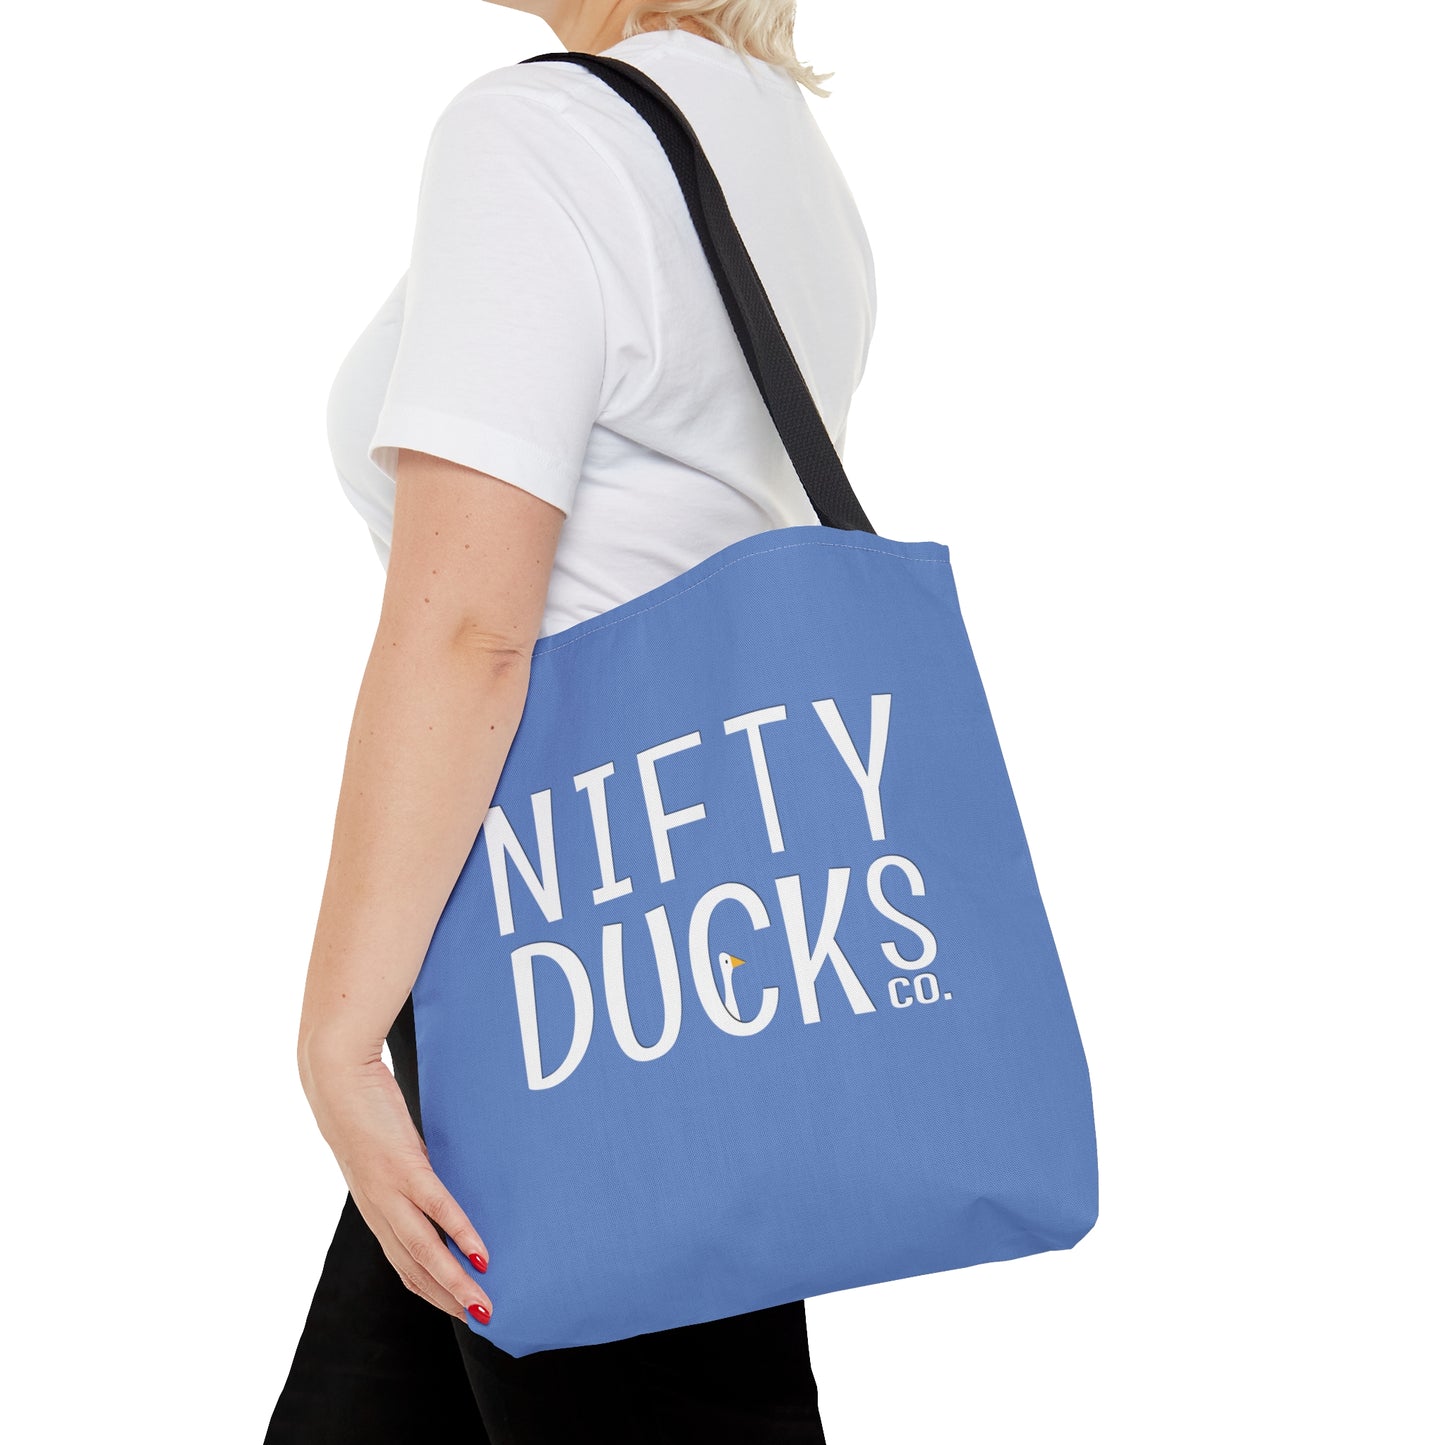 Nifty Ducks Co. Logo2 - Fennel Flower 74a6ff - Tote Bag